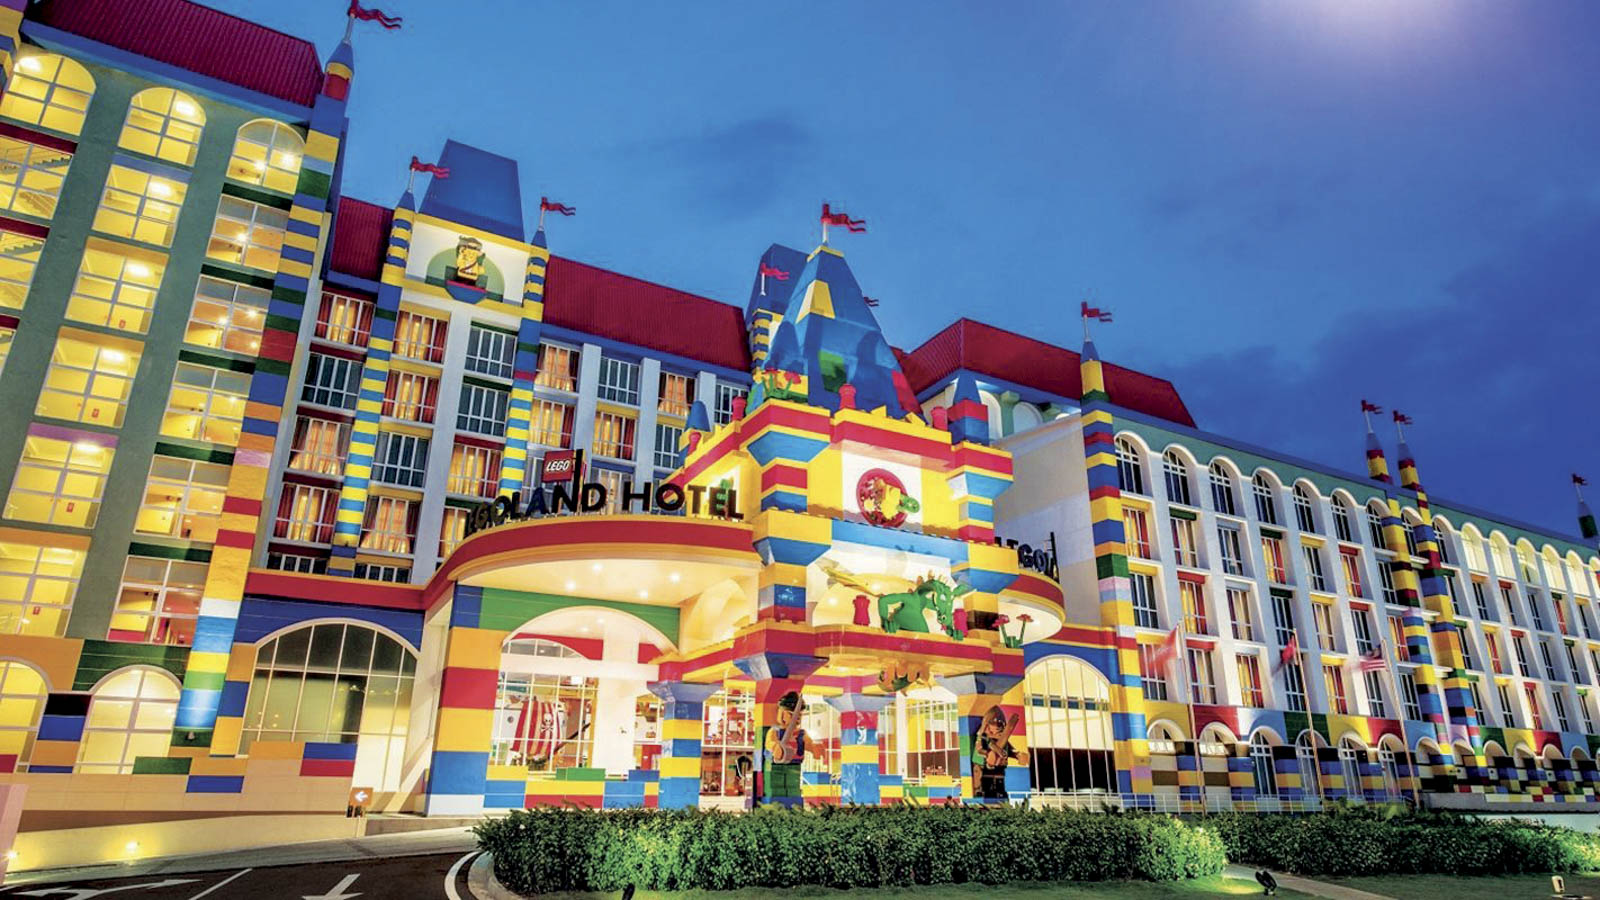 Legoland, Malaysia